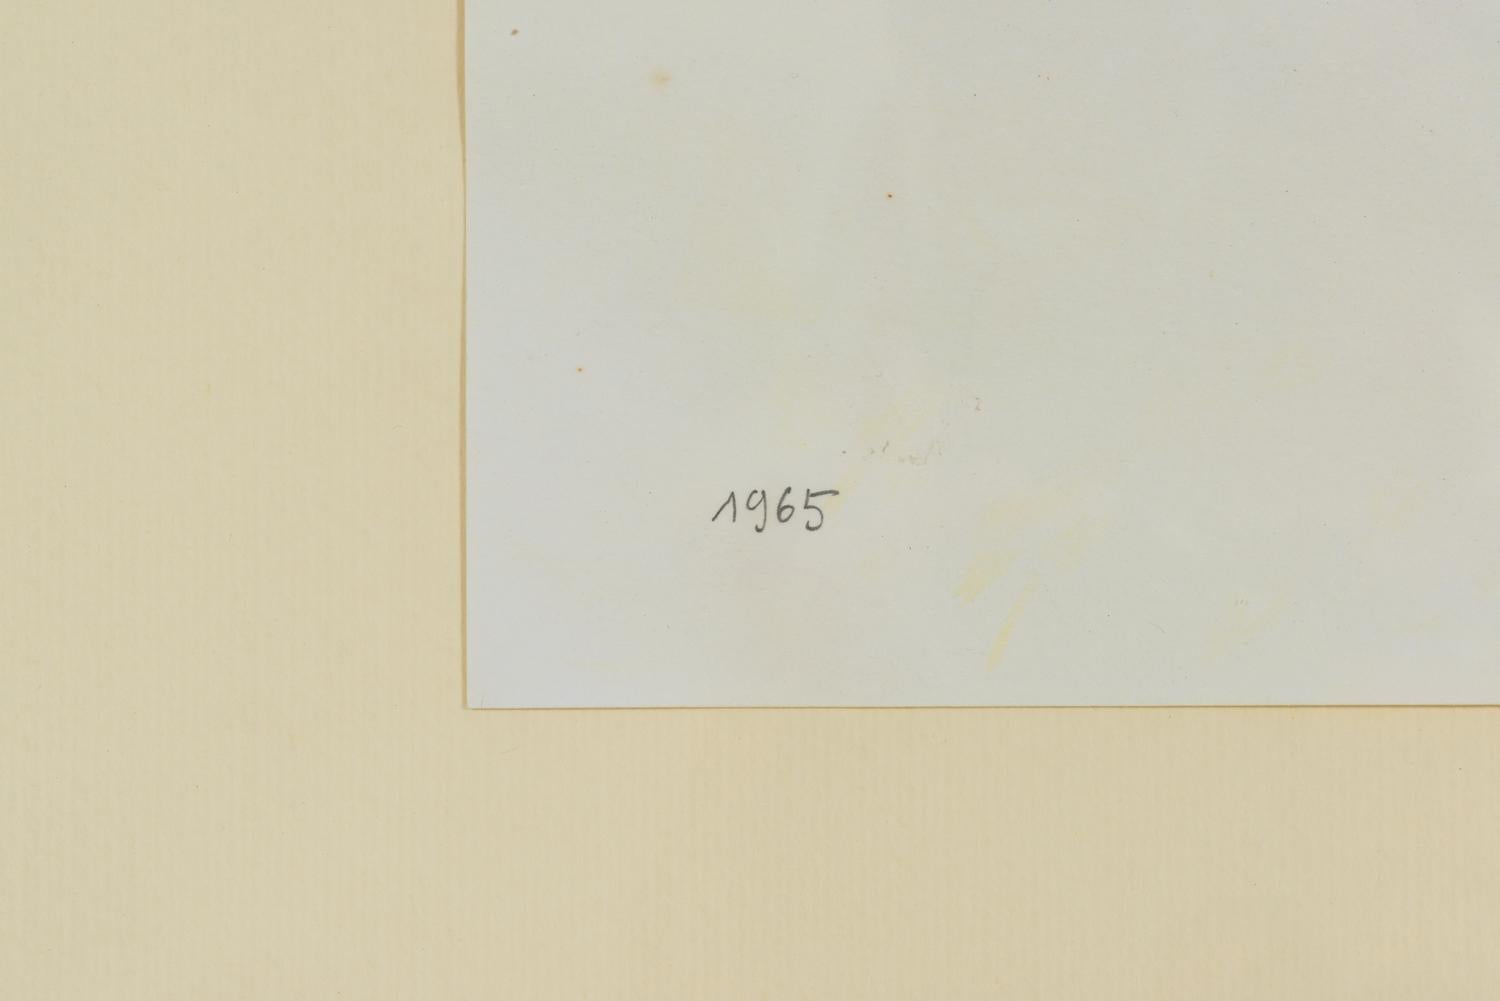 Alphanumerische Hommage an Stendhal, ein Werk aus den frühen 1960er Jahren, signiert und datiert auf der Vorderseite, begleitet von einem Echtheitszertifikat auf einer Fotografie, ausgestellt von der Stiftung Sarenco.
Von der Sarenco-Stiftung,